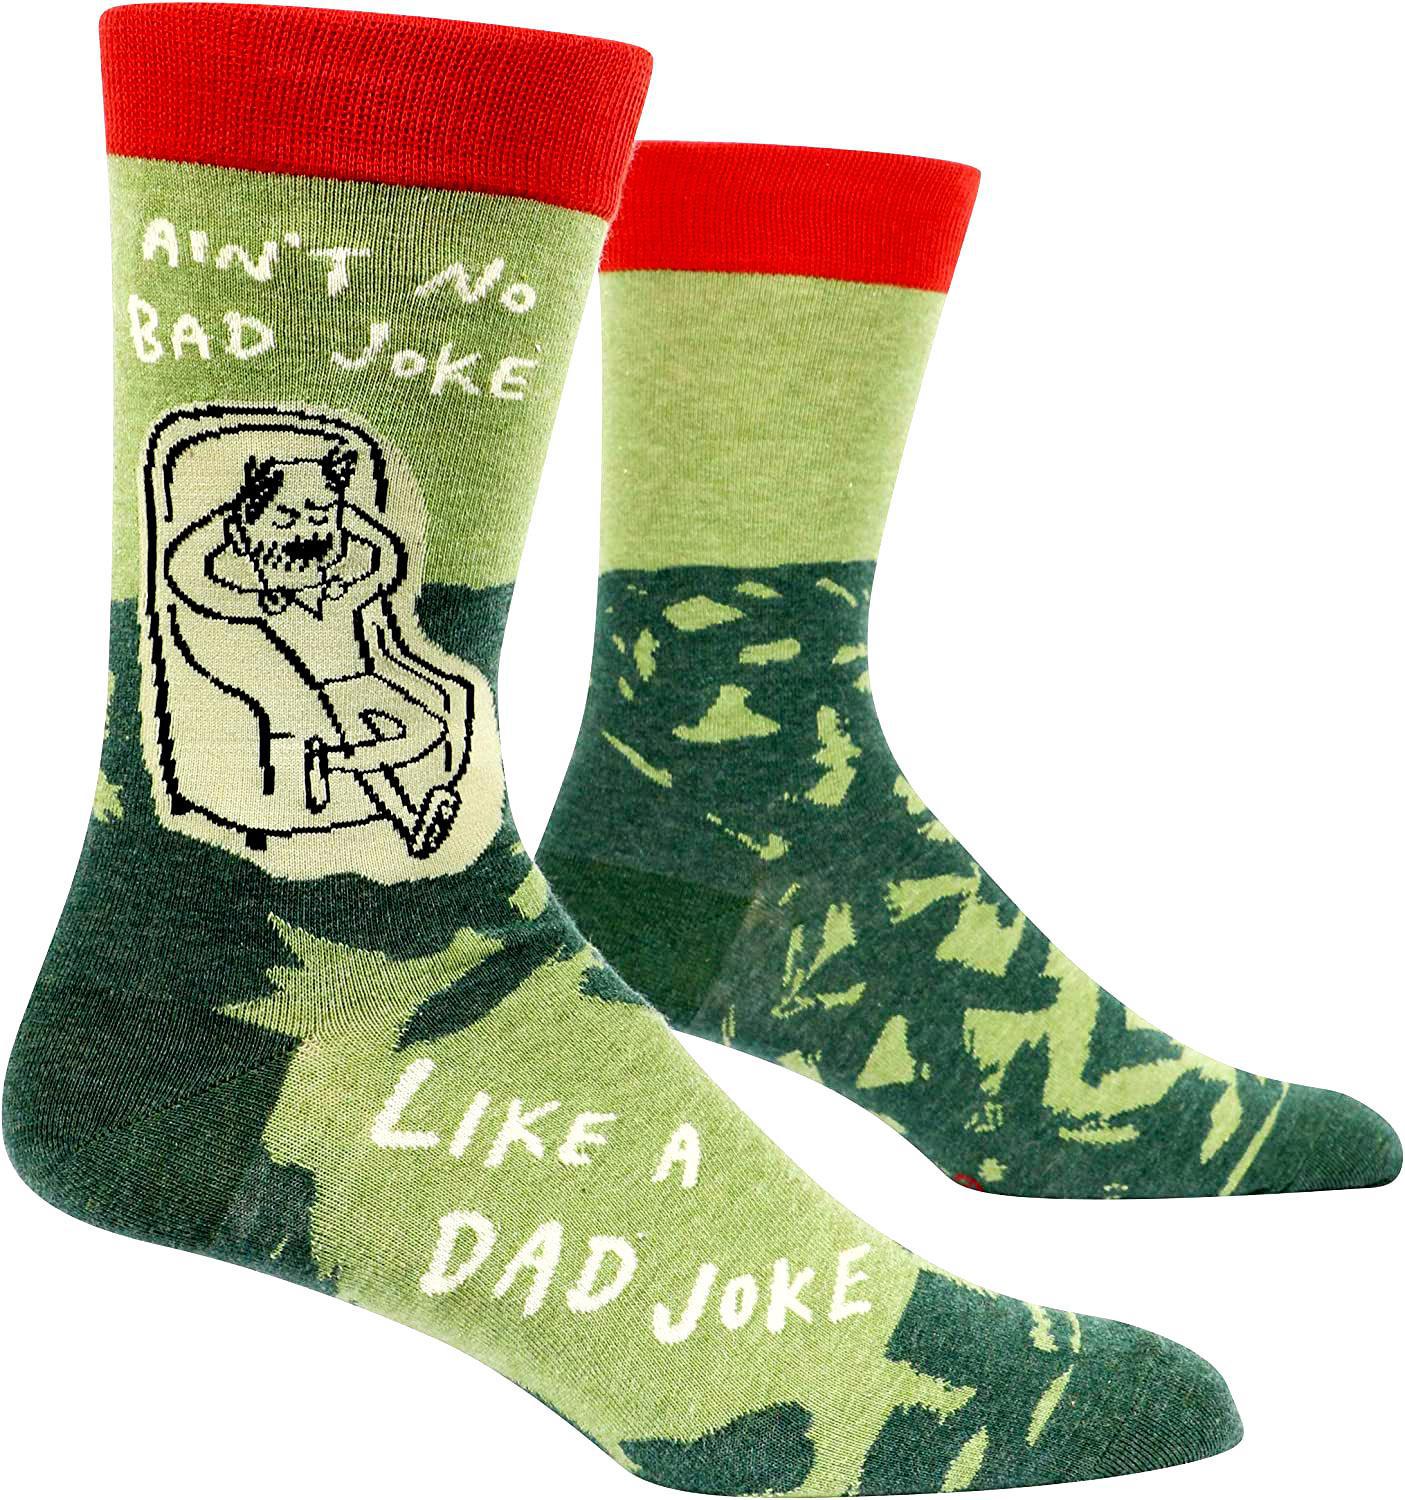 "Ain't No Bad Joke Like a Dad Joke" socks!